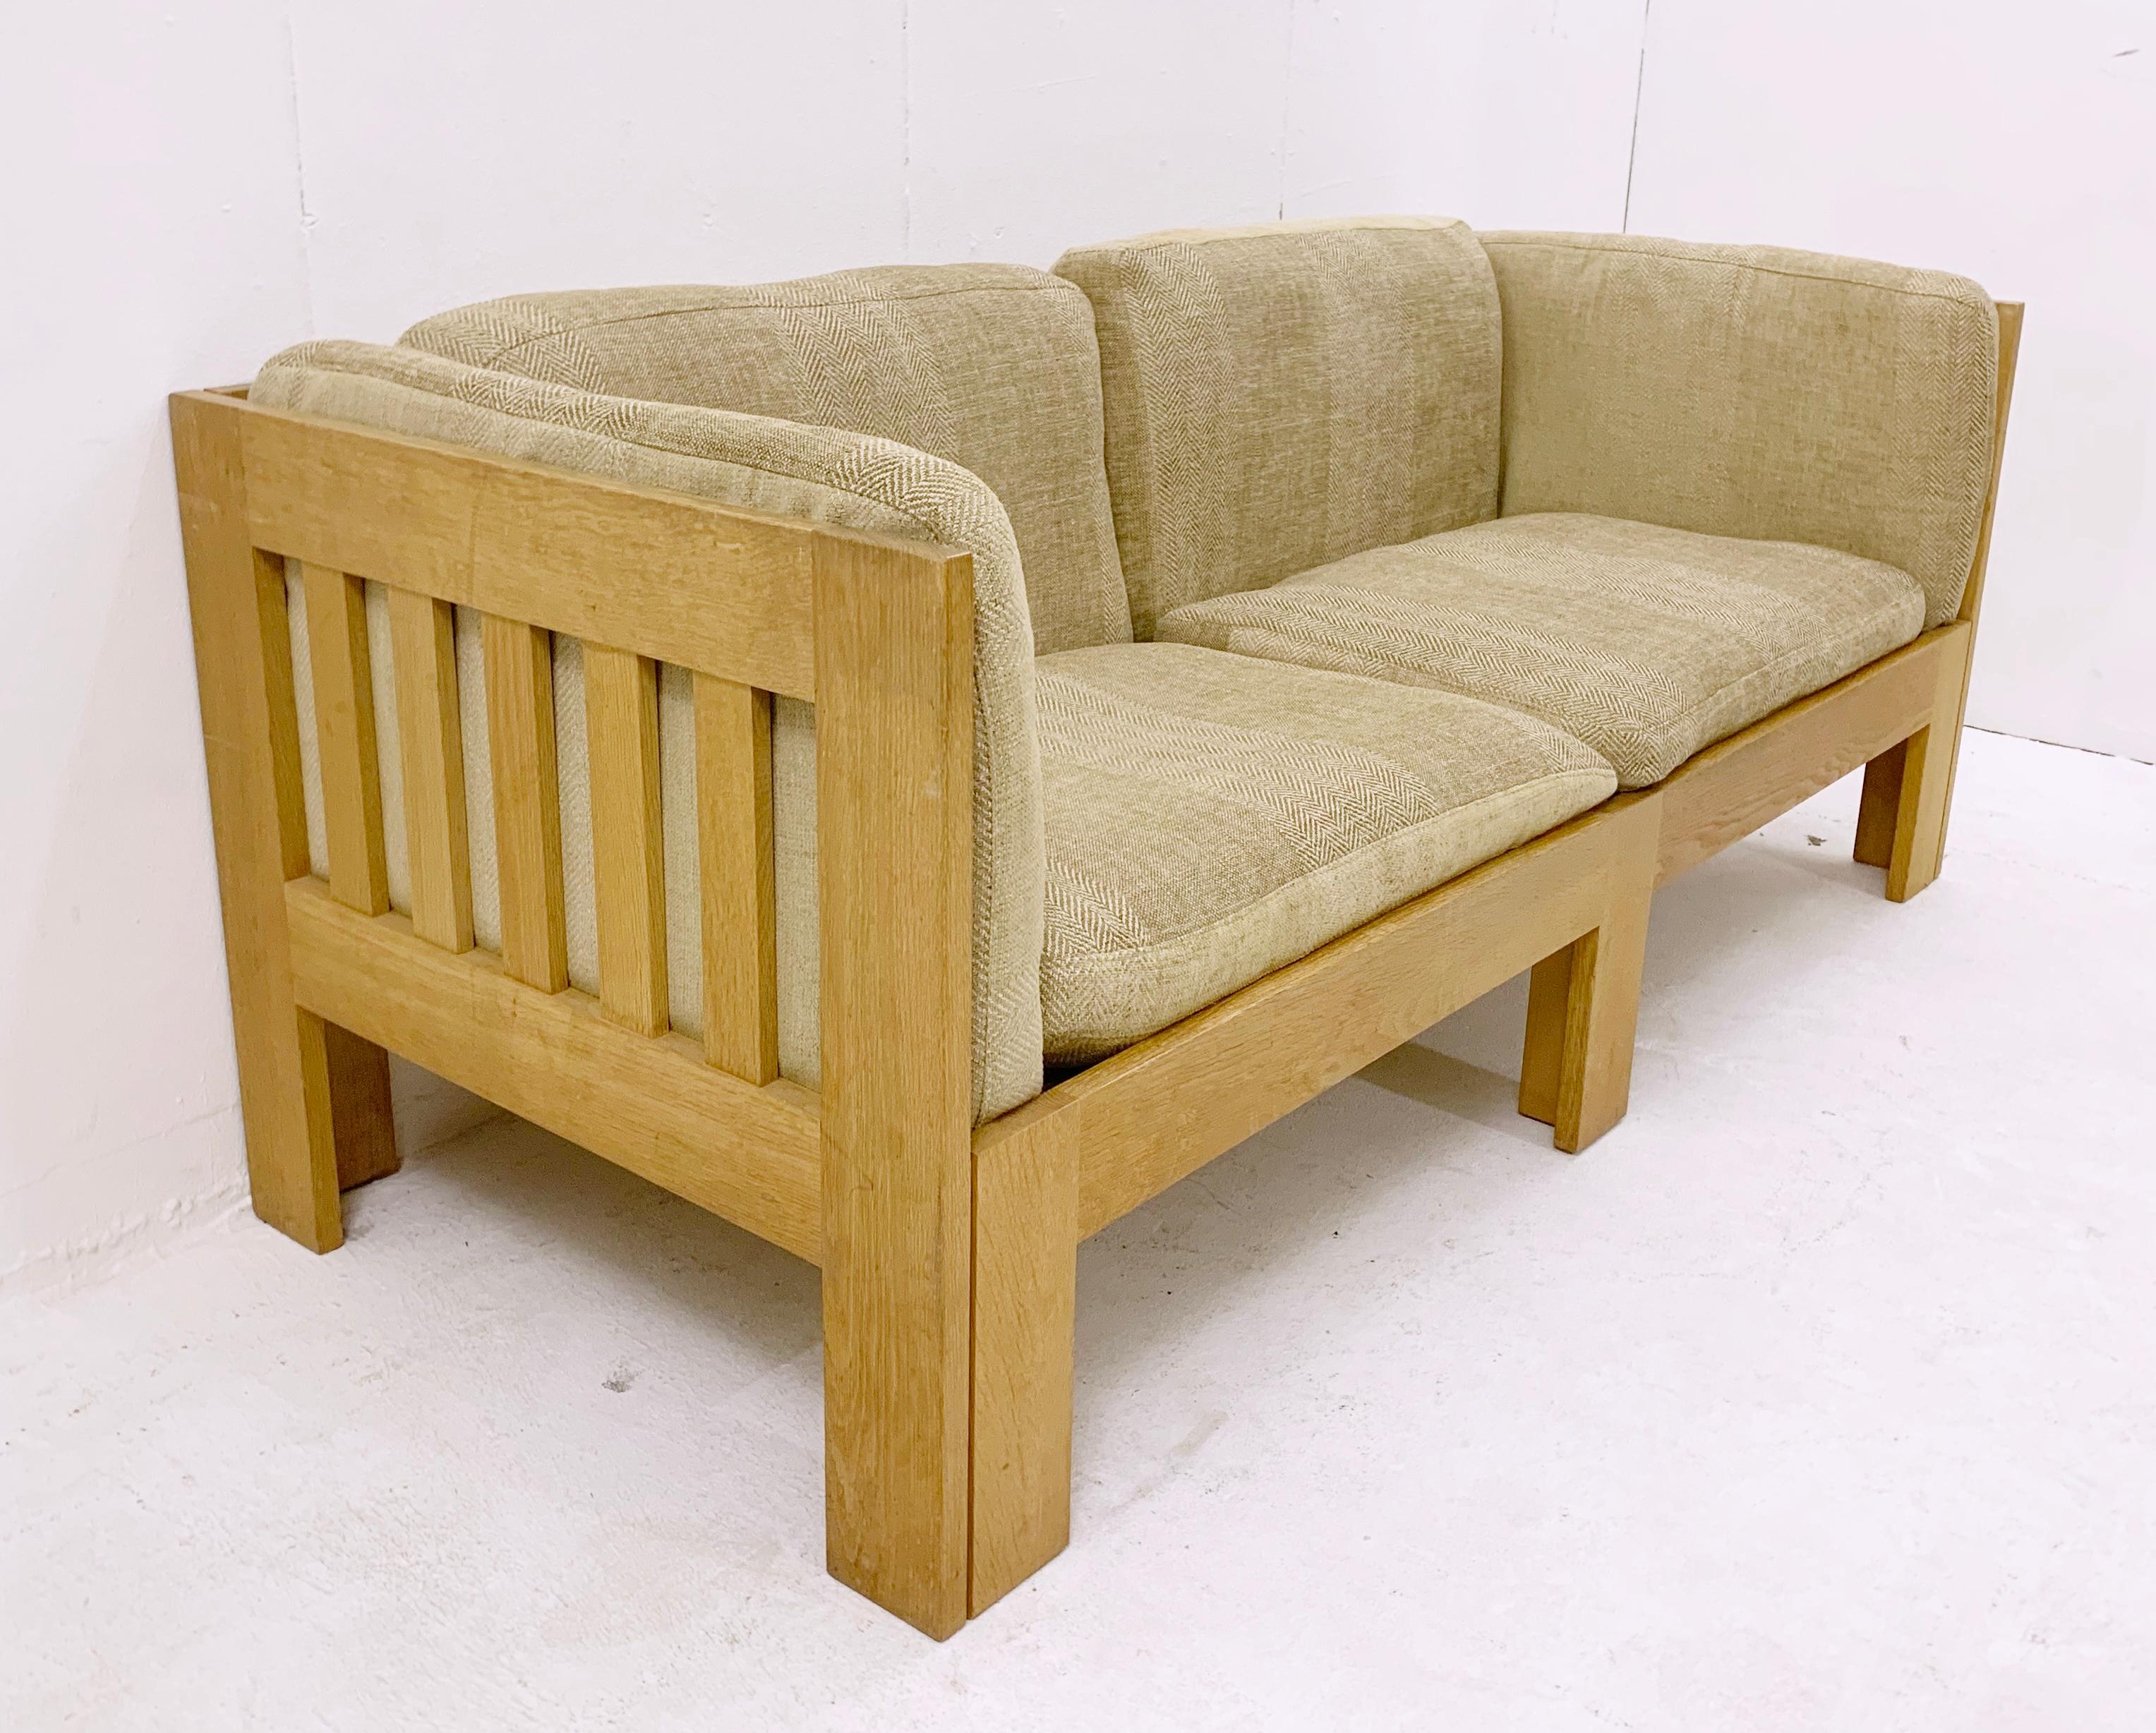 Mid-century oak sofa by Tage Poulsen - Denmark 1960s.